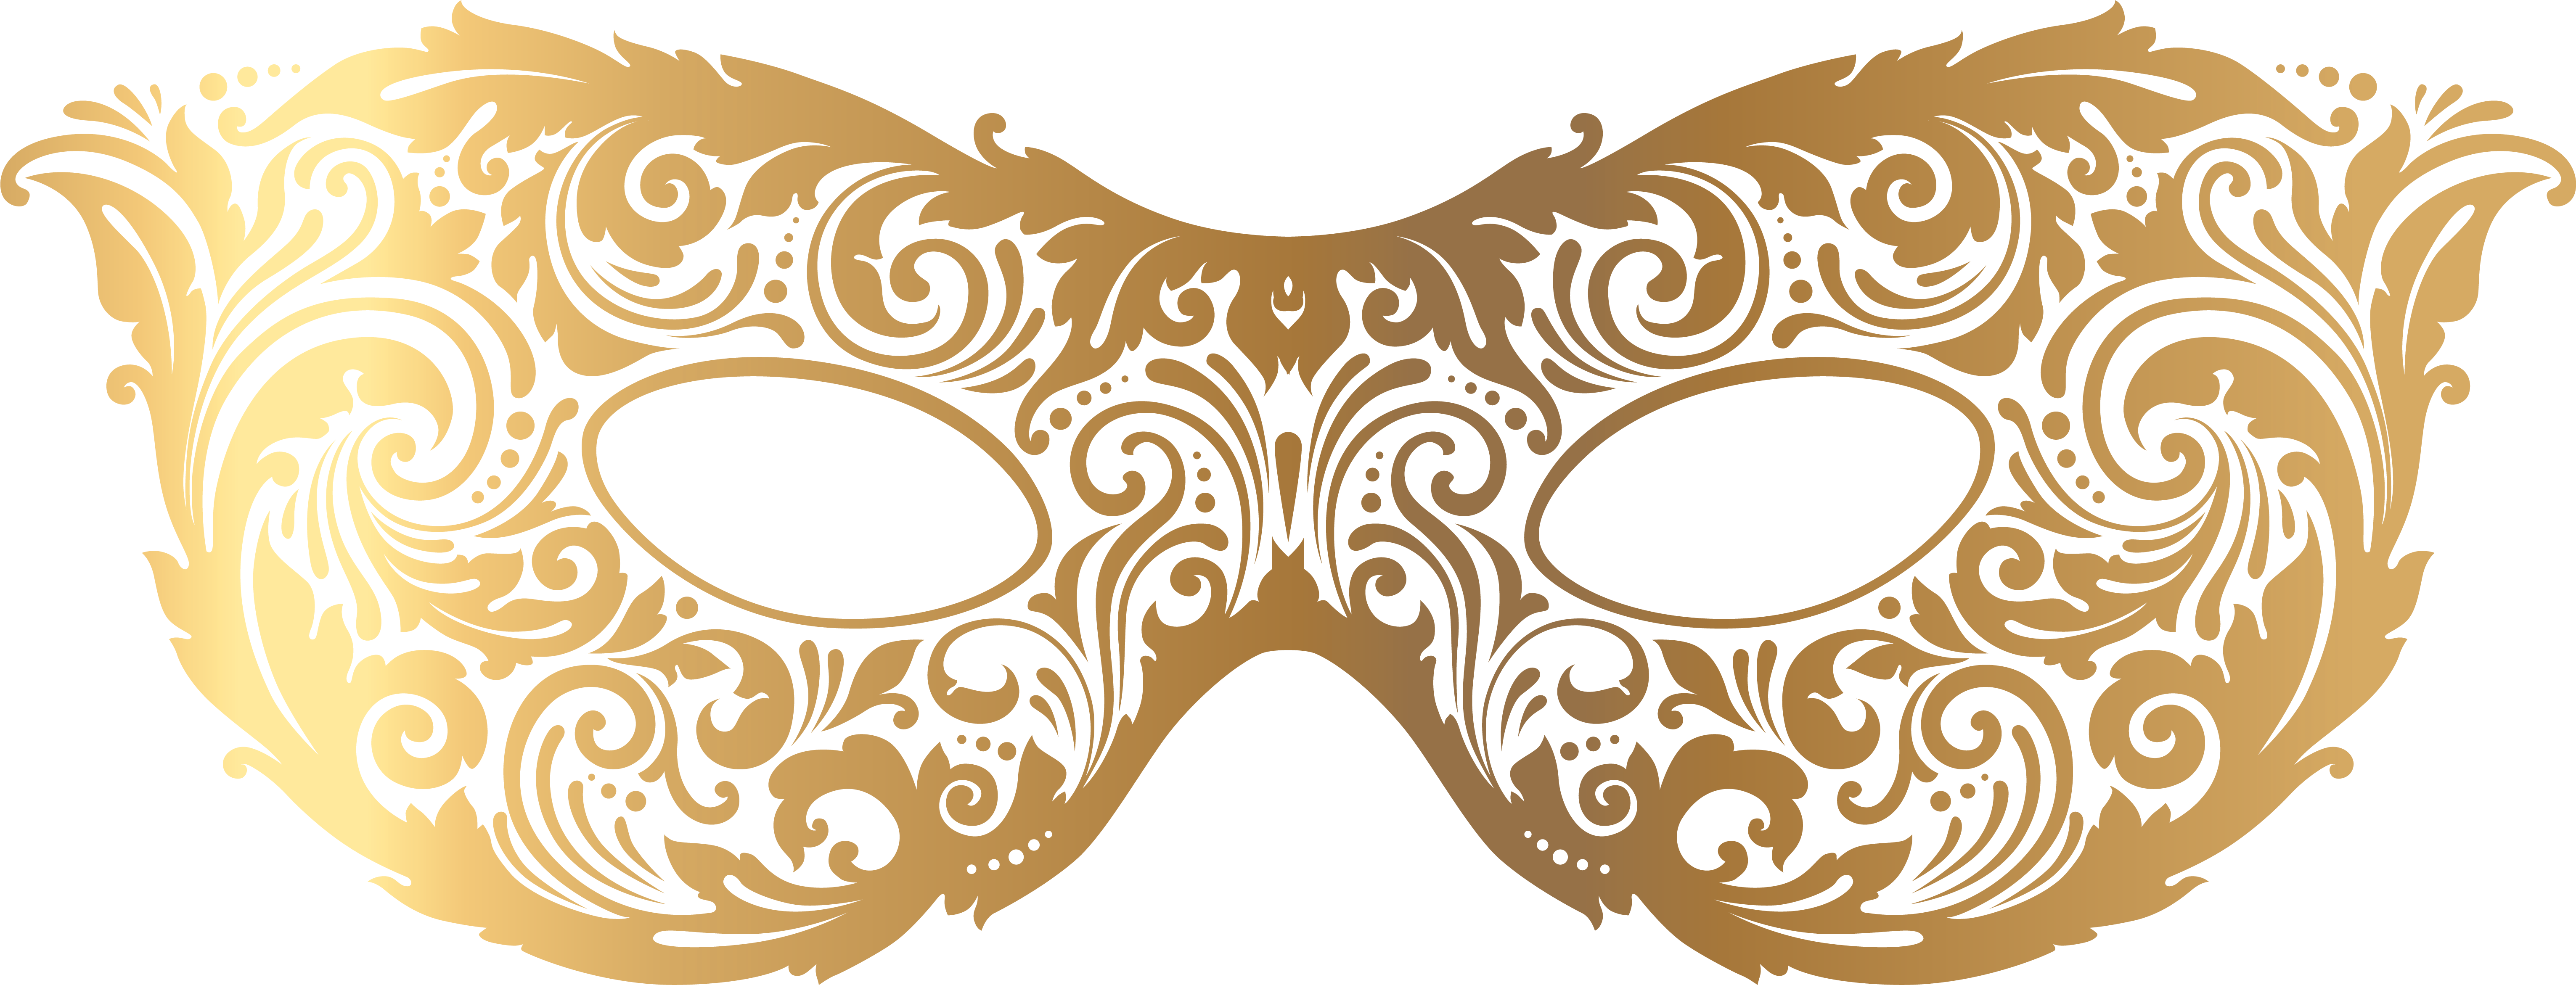 Gold Masquerade Mask PNG Image